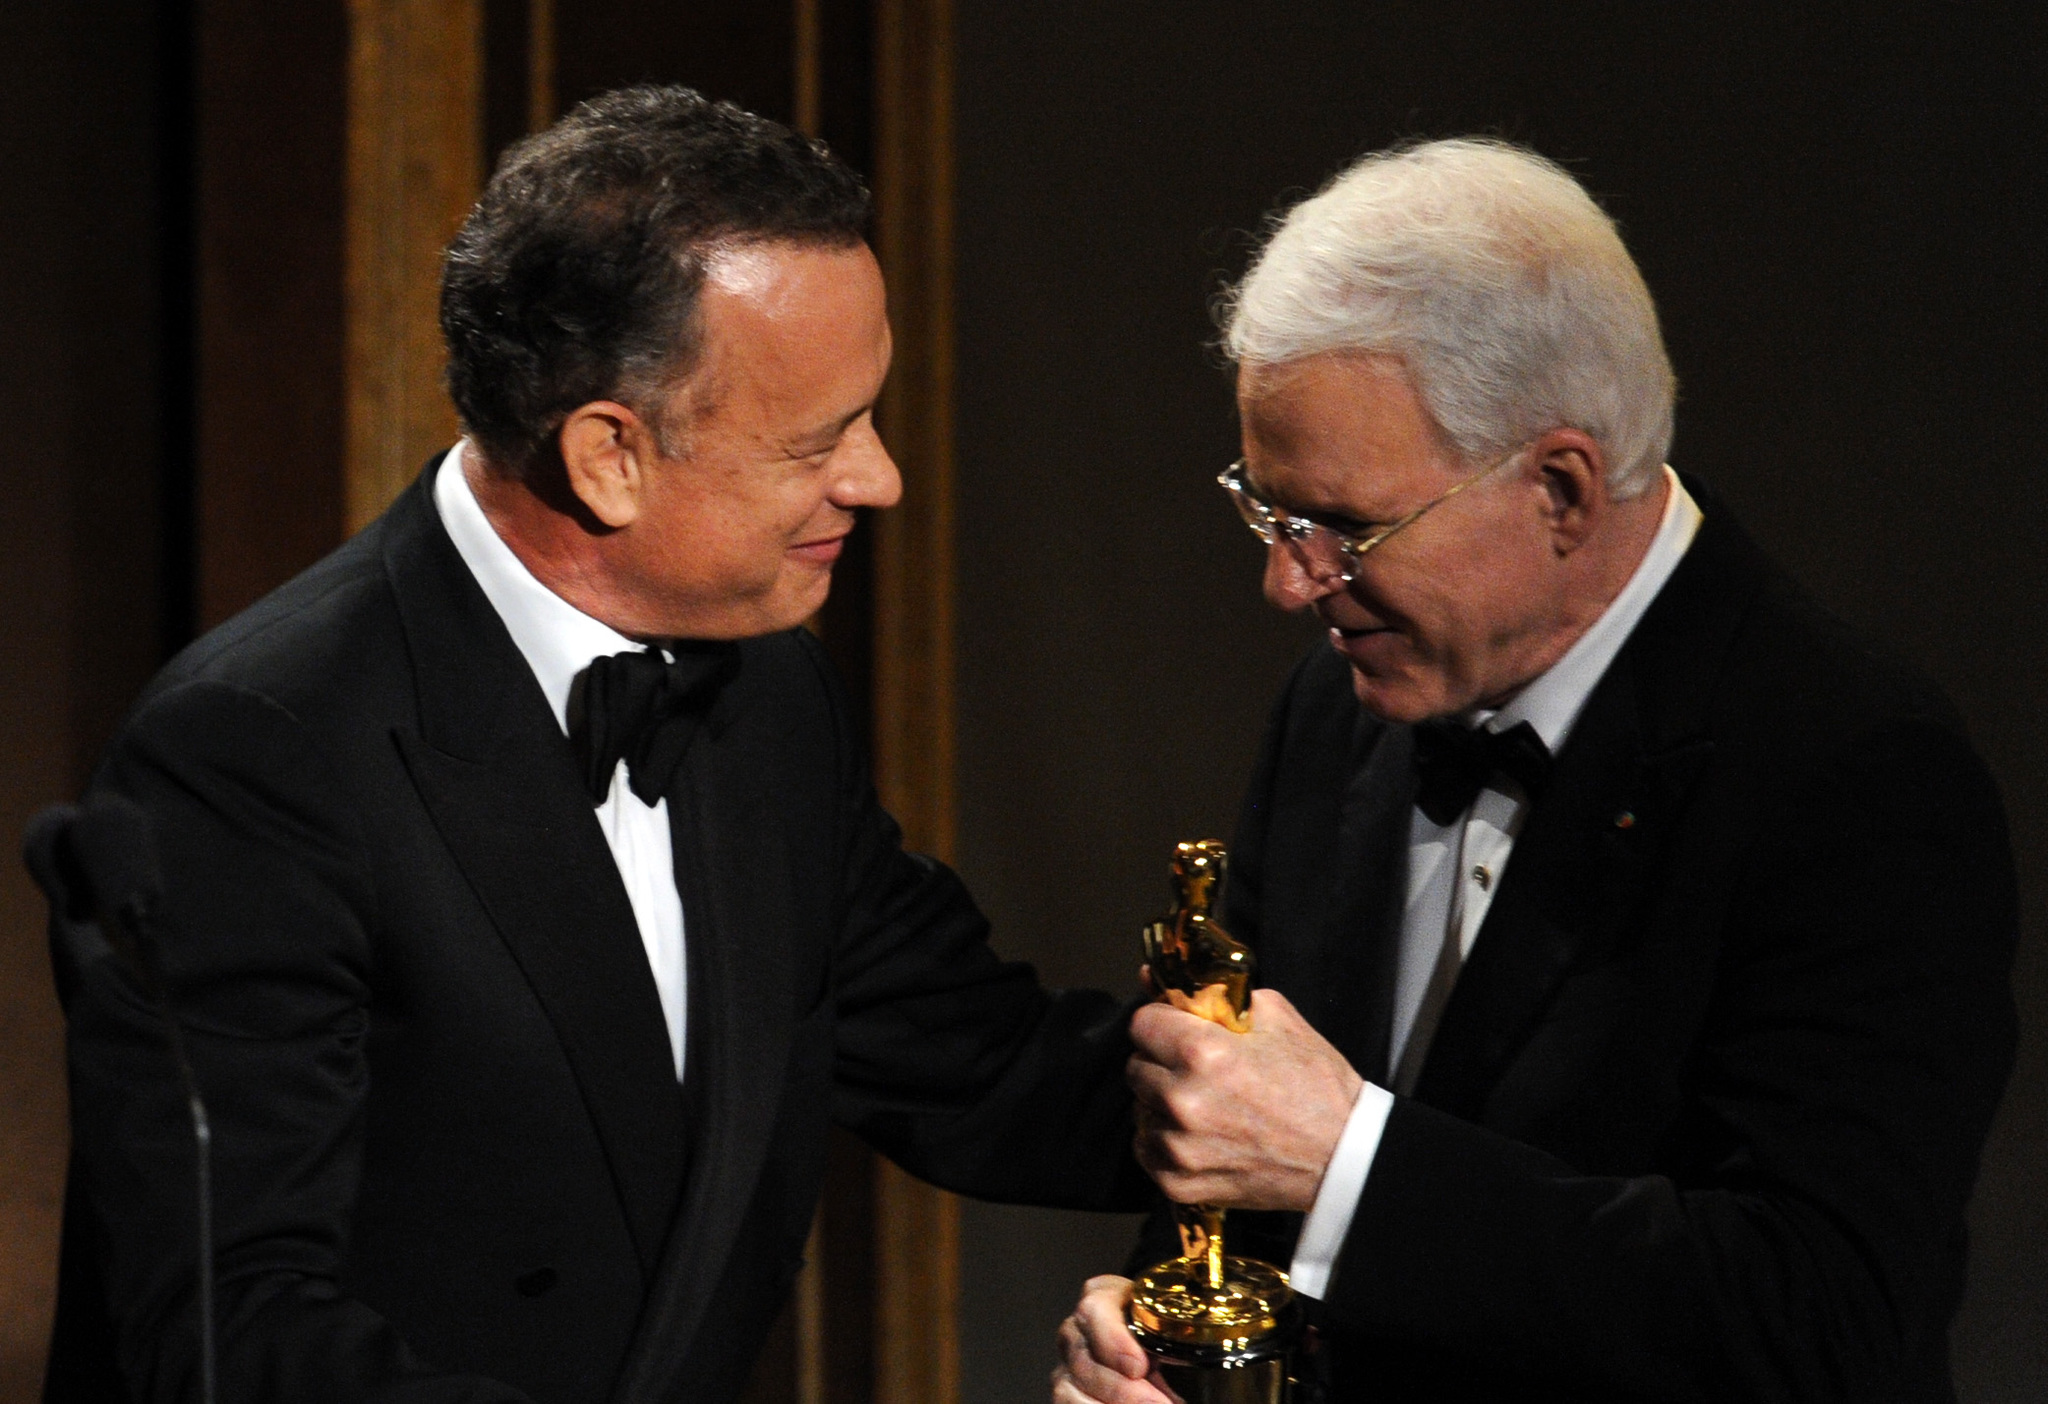 Tom Hanks and Steve Martin